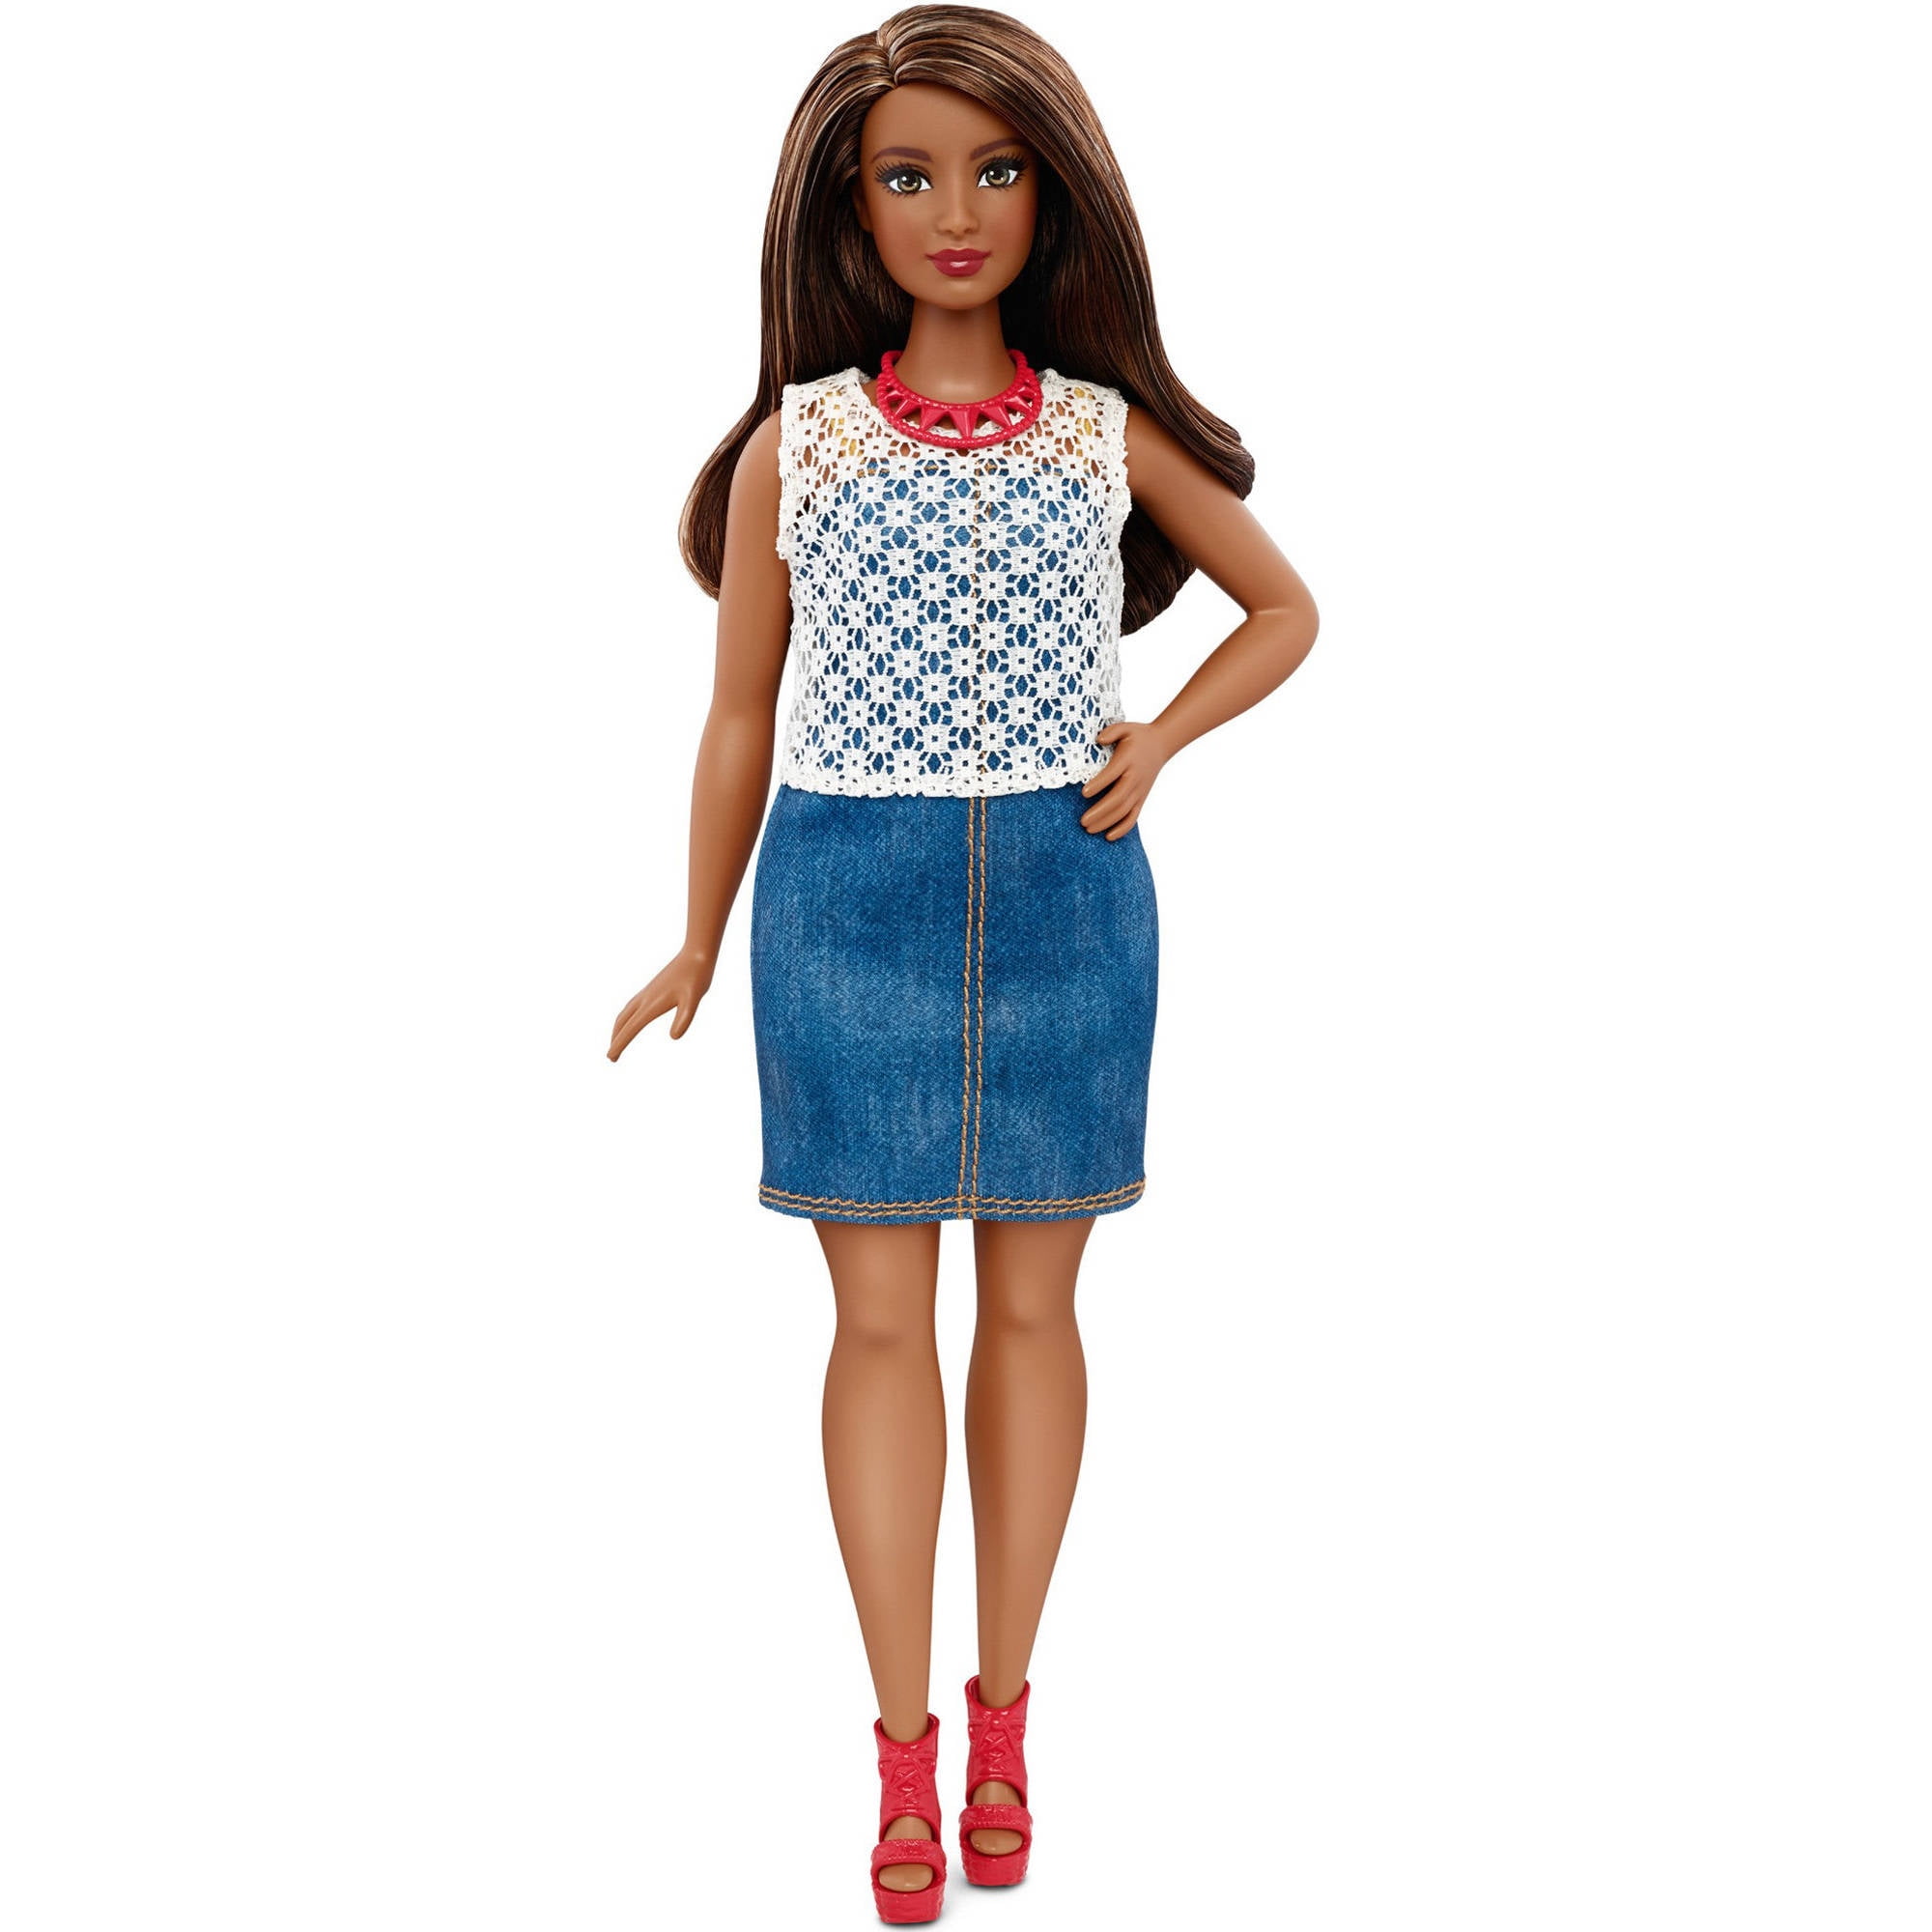 NEW 2018 Barbie Fashionista Curvy Doll Denim Ruffle Shift Dress ~ Clothing 